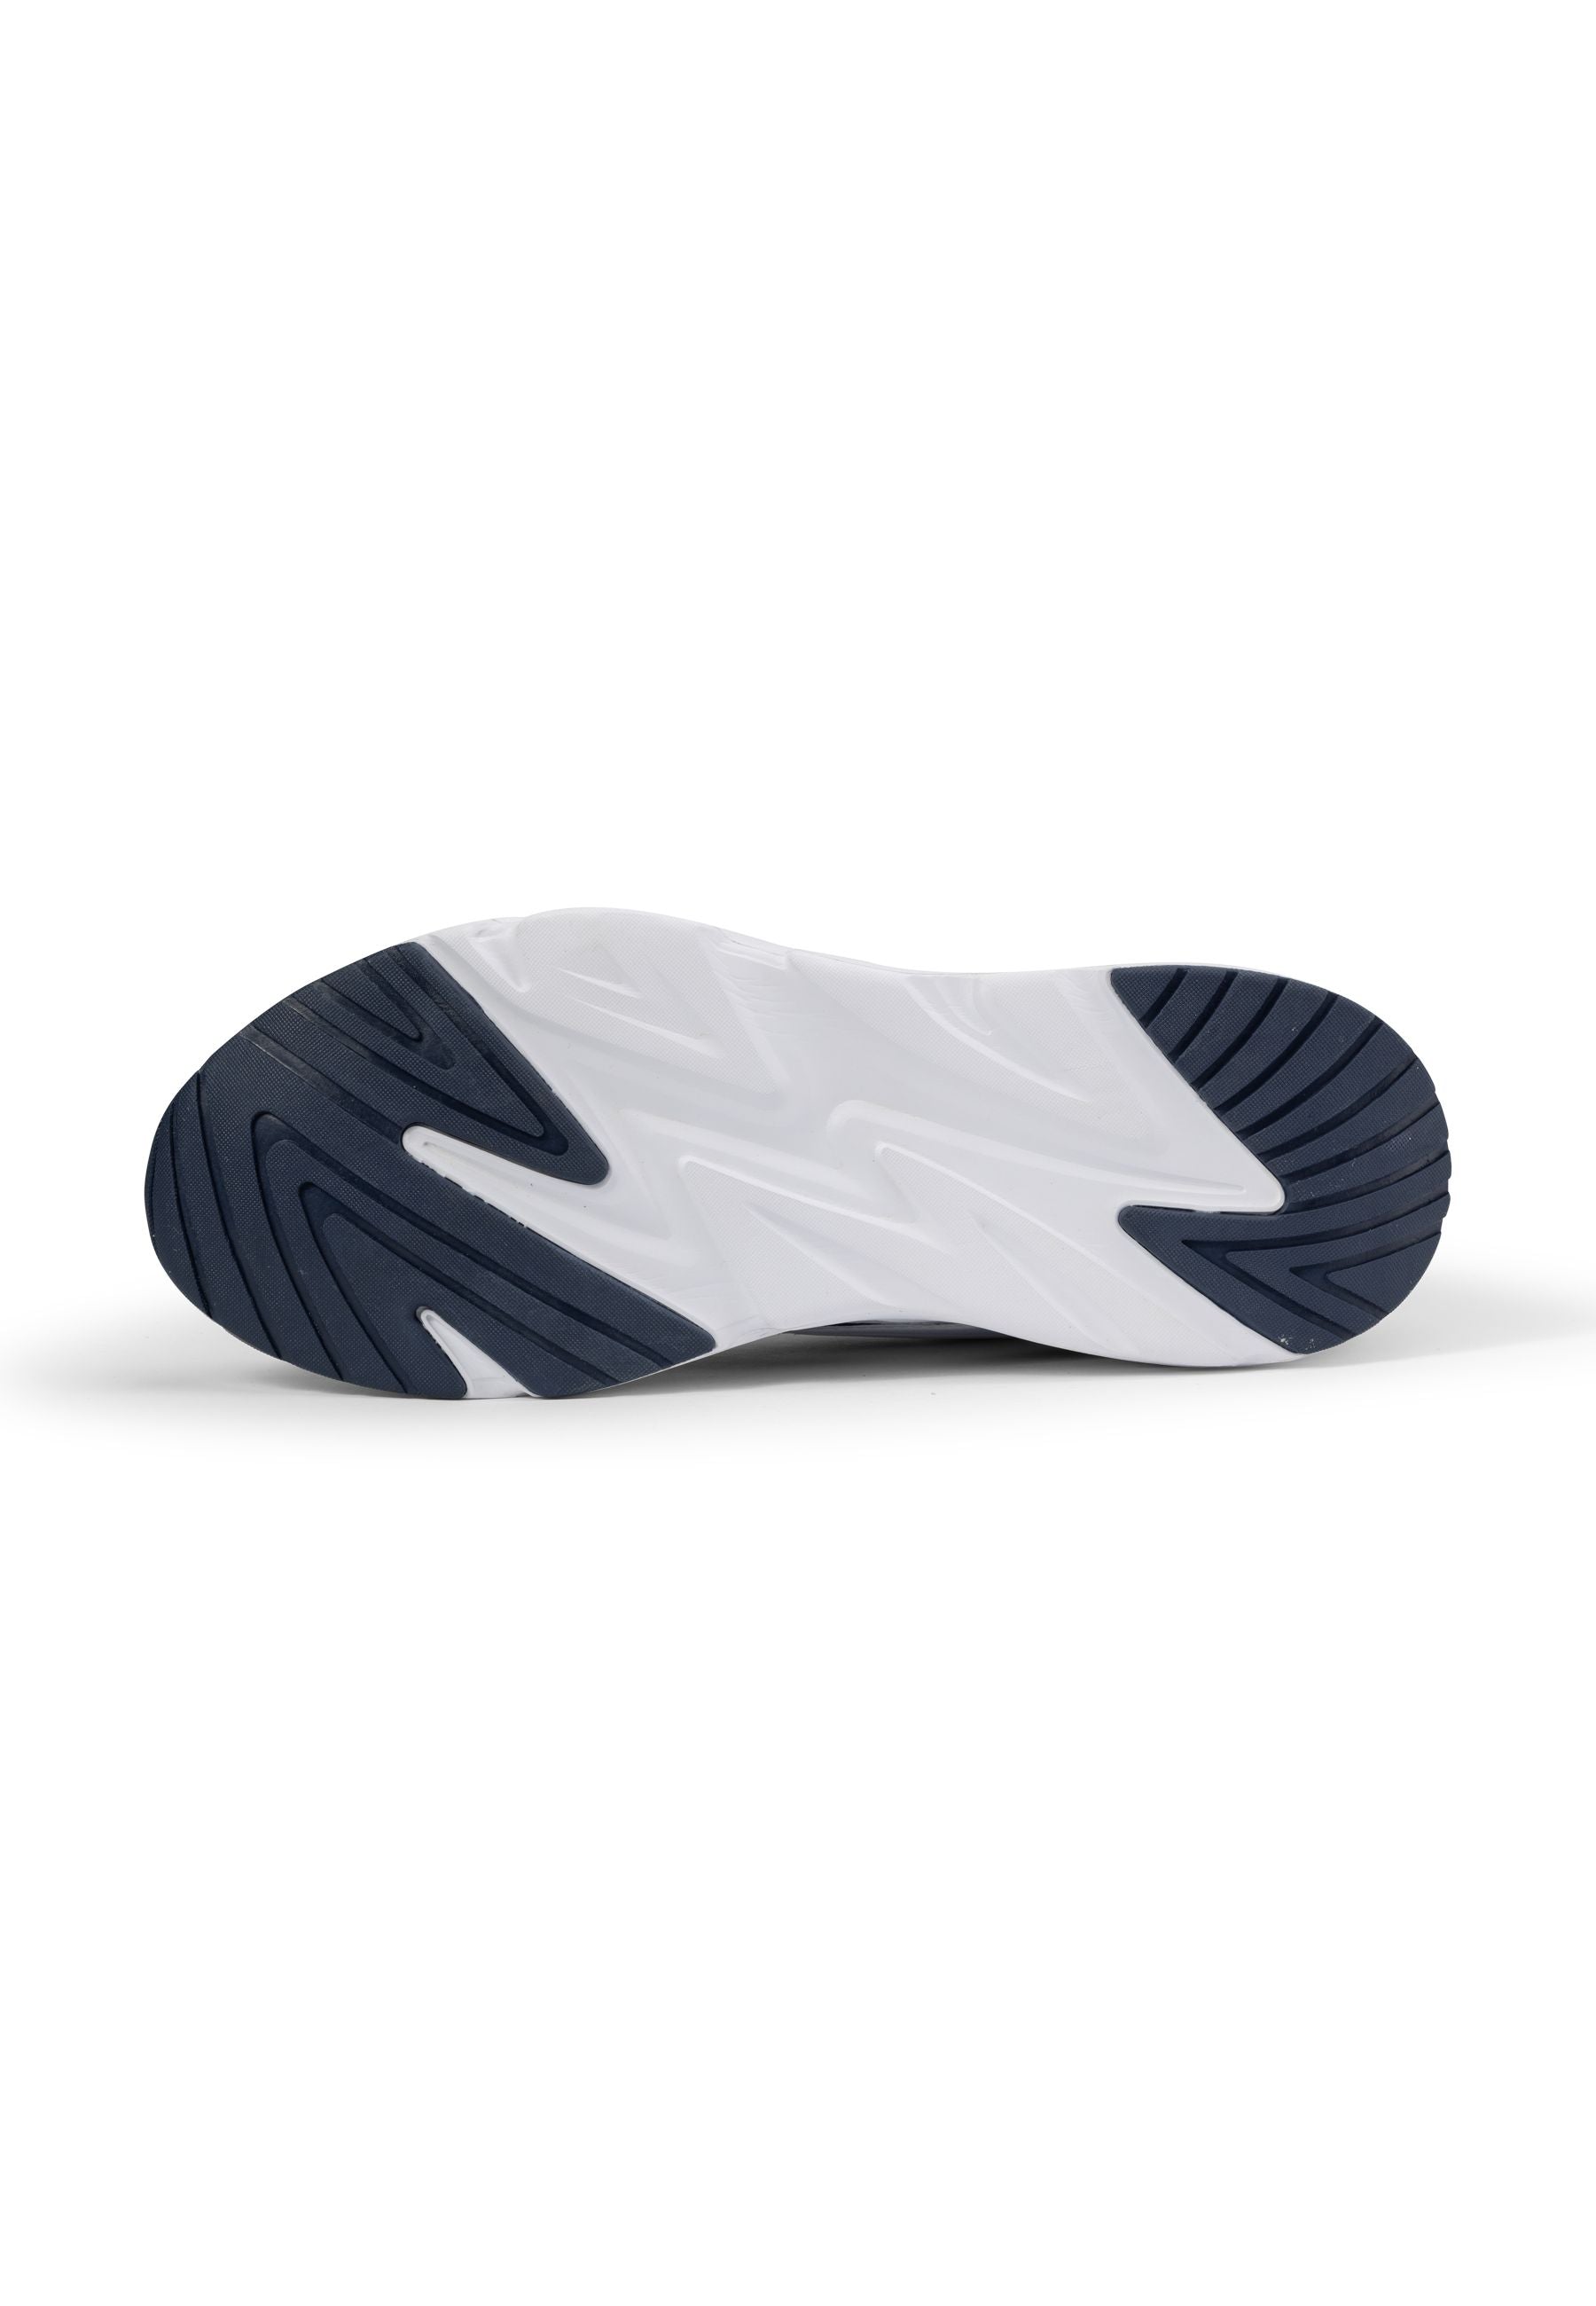 Fila Vittori in Fila Navy-Nimbus Cloud Sneakers Fila   